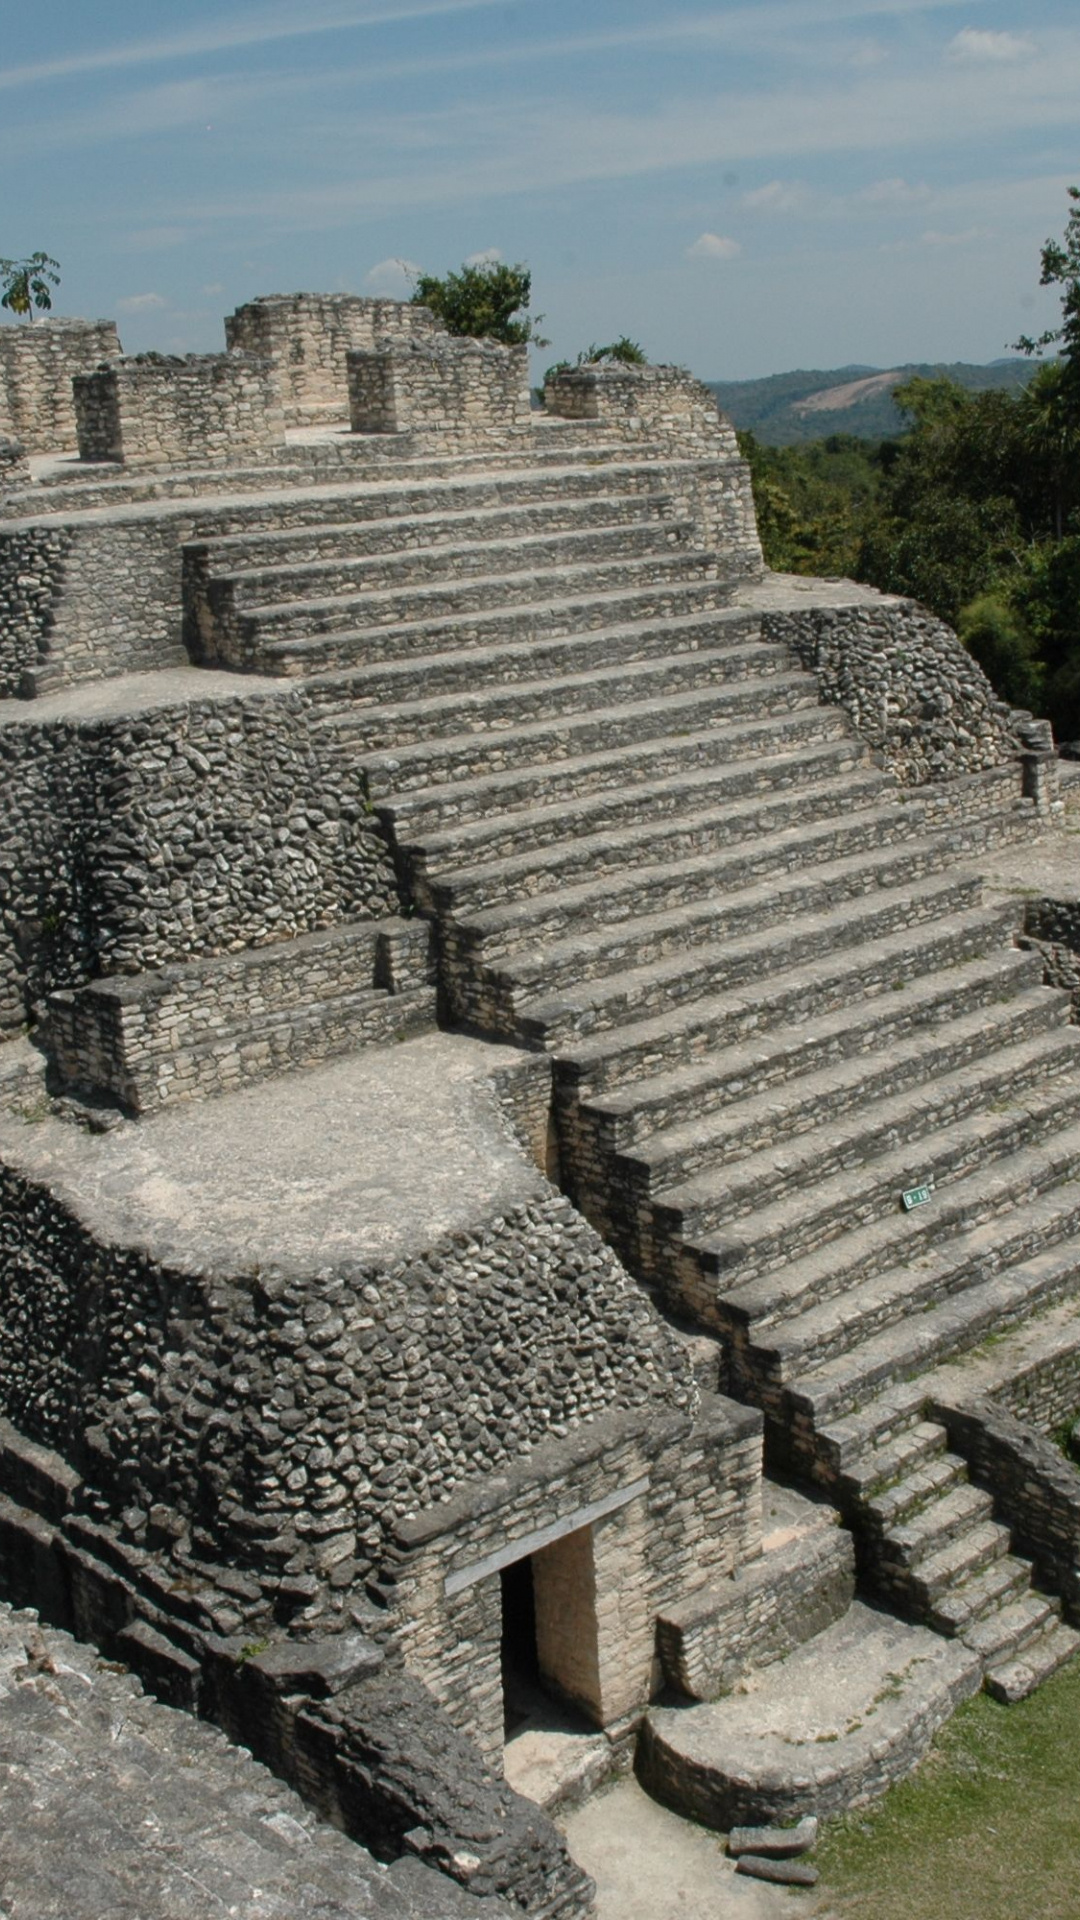 Marvel at Maya ruins, HD wallpapers, Ancient history, Mysterious pyramids, 1080x1920 Full HD Phone